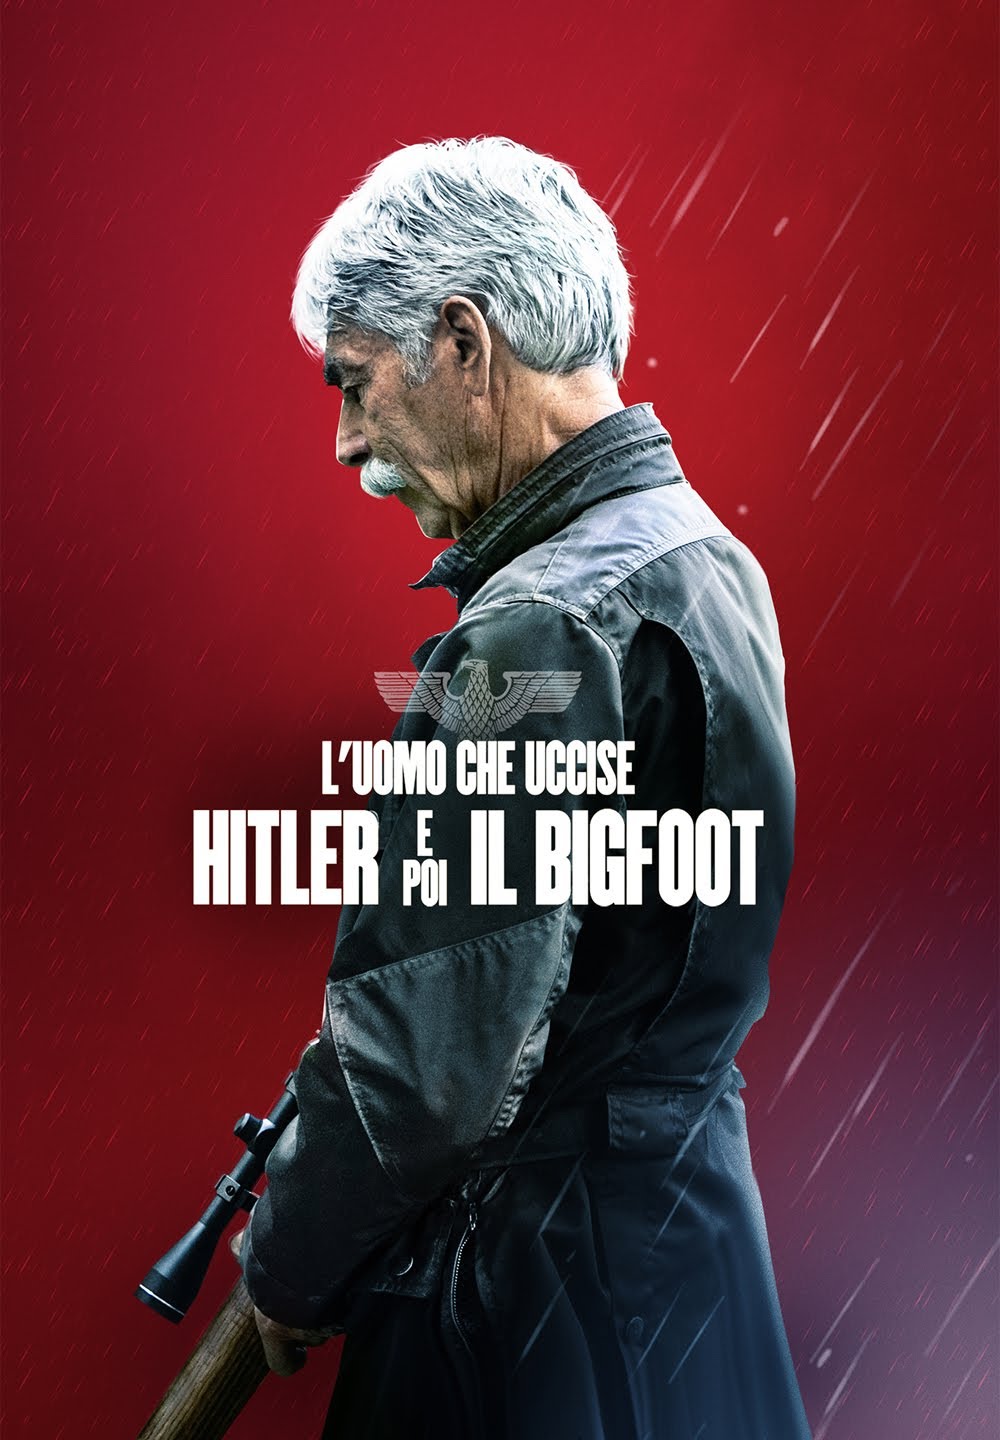 L’uomo che uccise Hitler e poi il Bigfoot [HD] (2018)